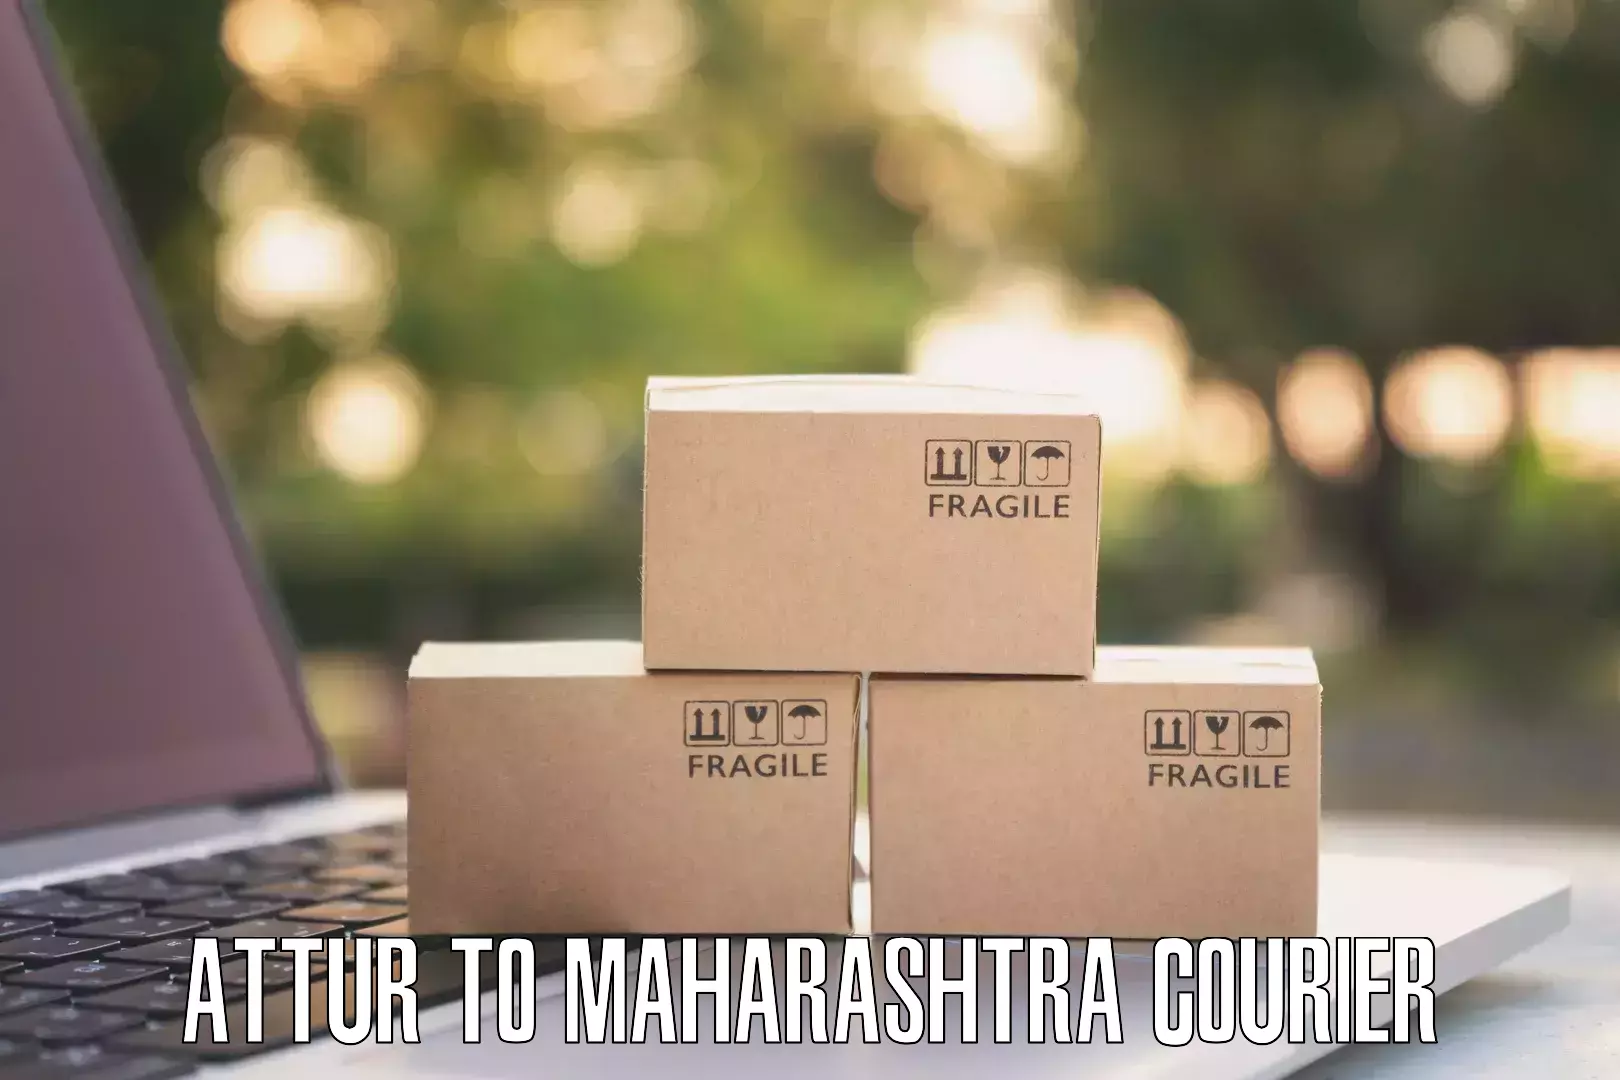 Comprehensive logistics solutions Attur to Maharashtra